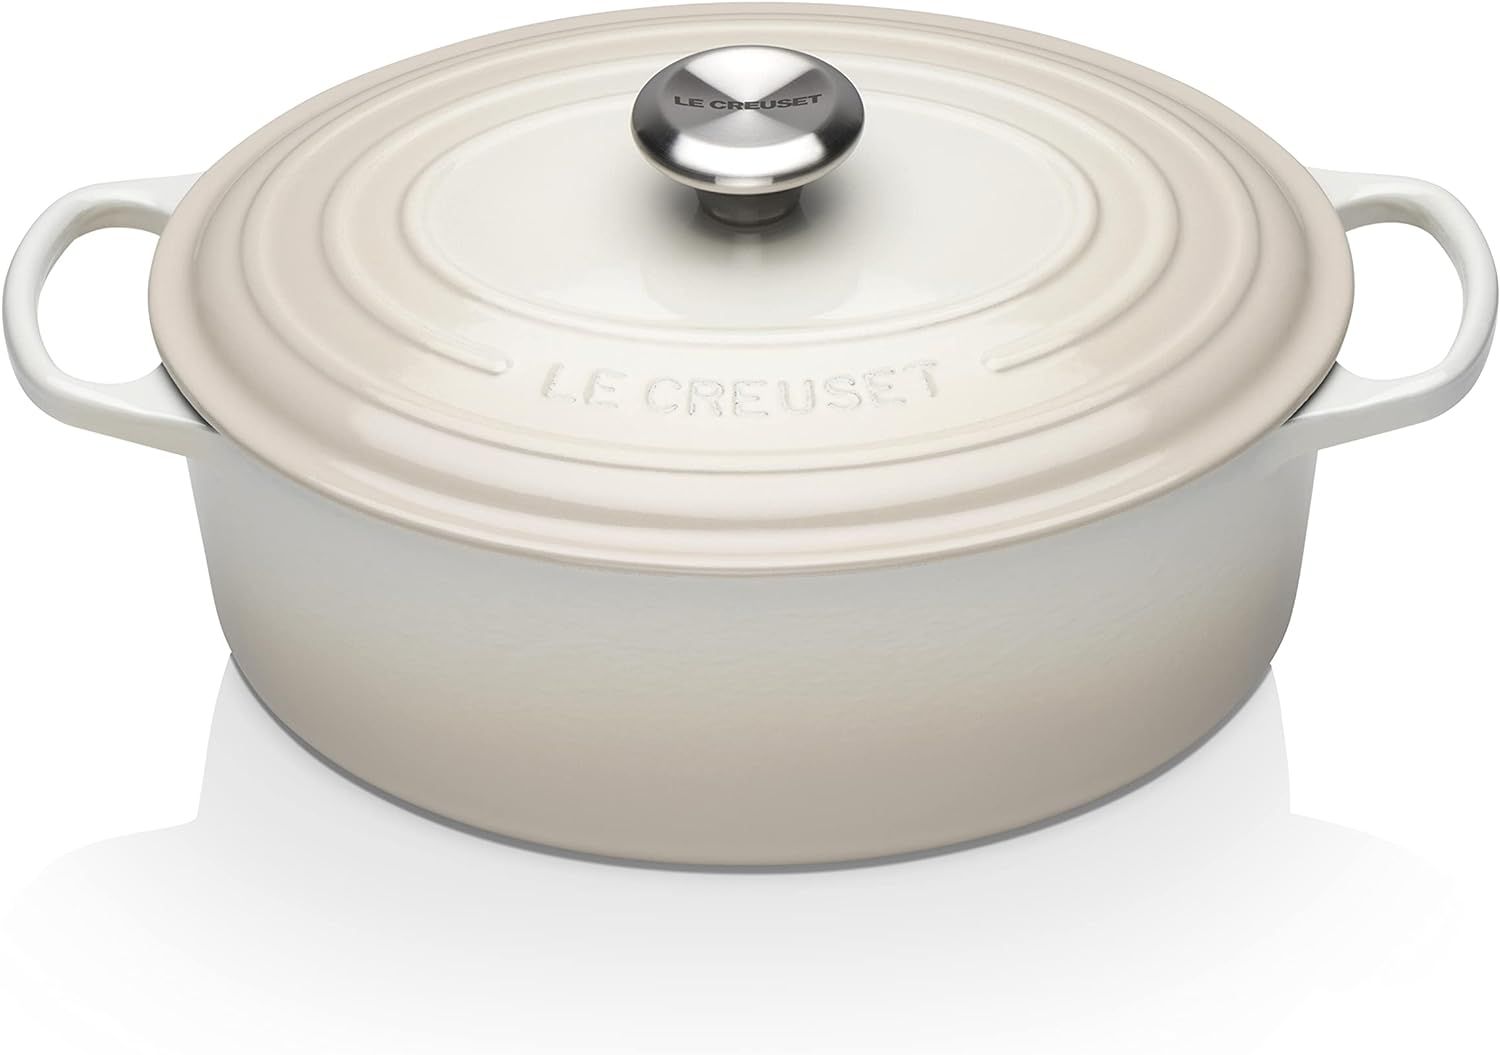 Le Creuset Enameled Cast Iron Signature Oval Dutch Oven, 5 qt. , Meringue | Amazon (US)